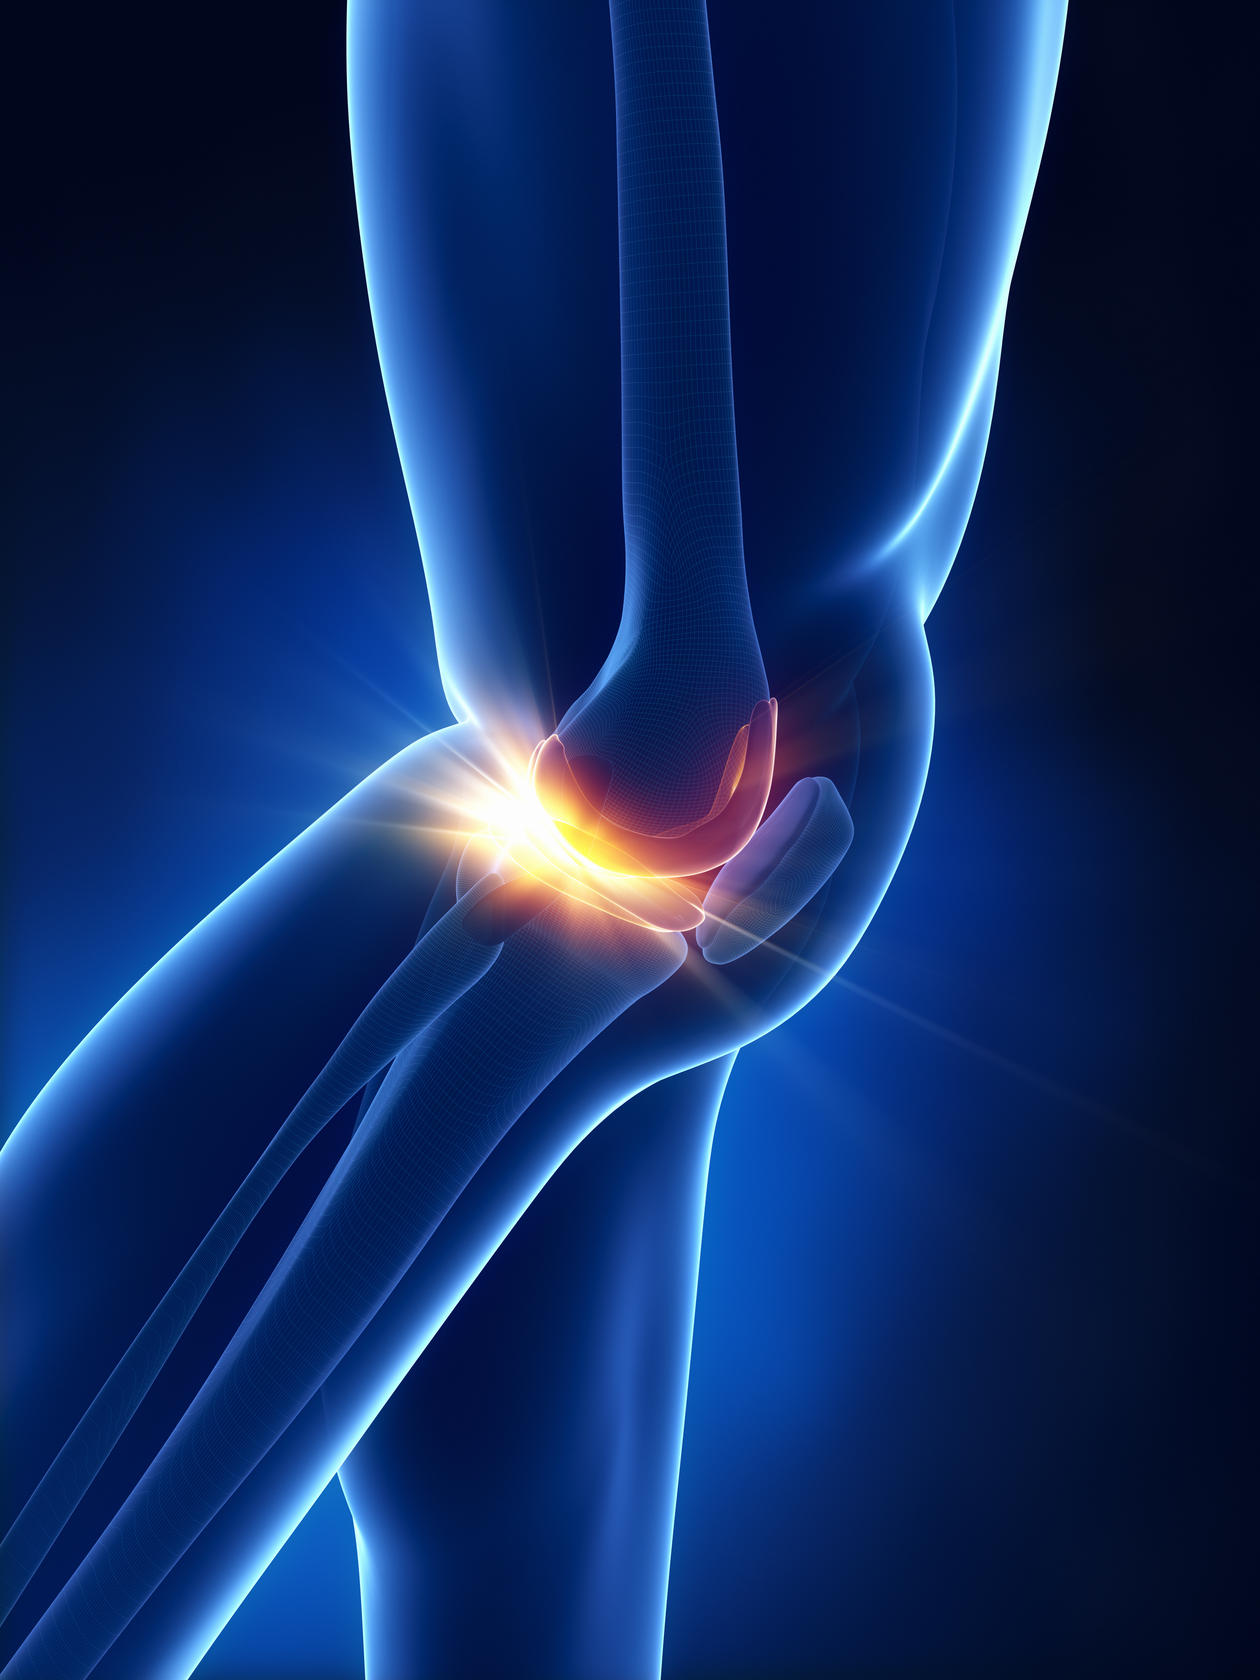 Osteoarthritis results in a breakdown of cartilage in joints.